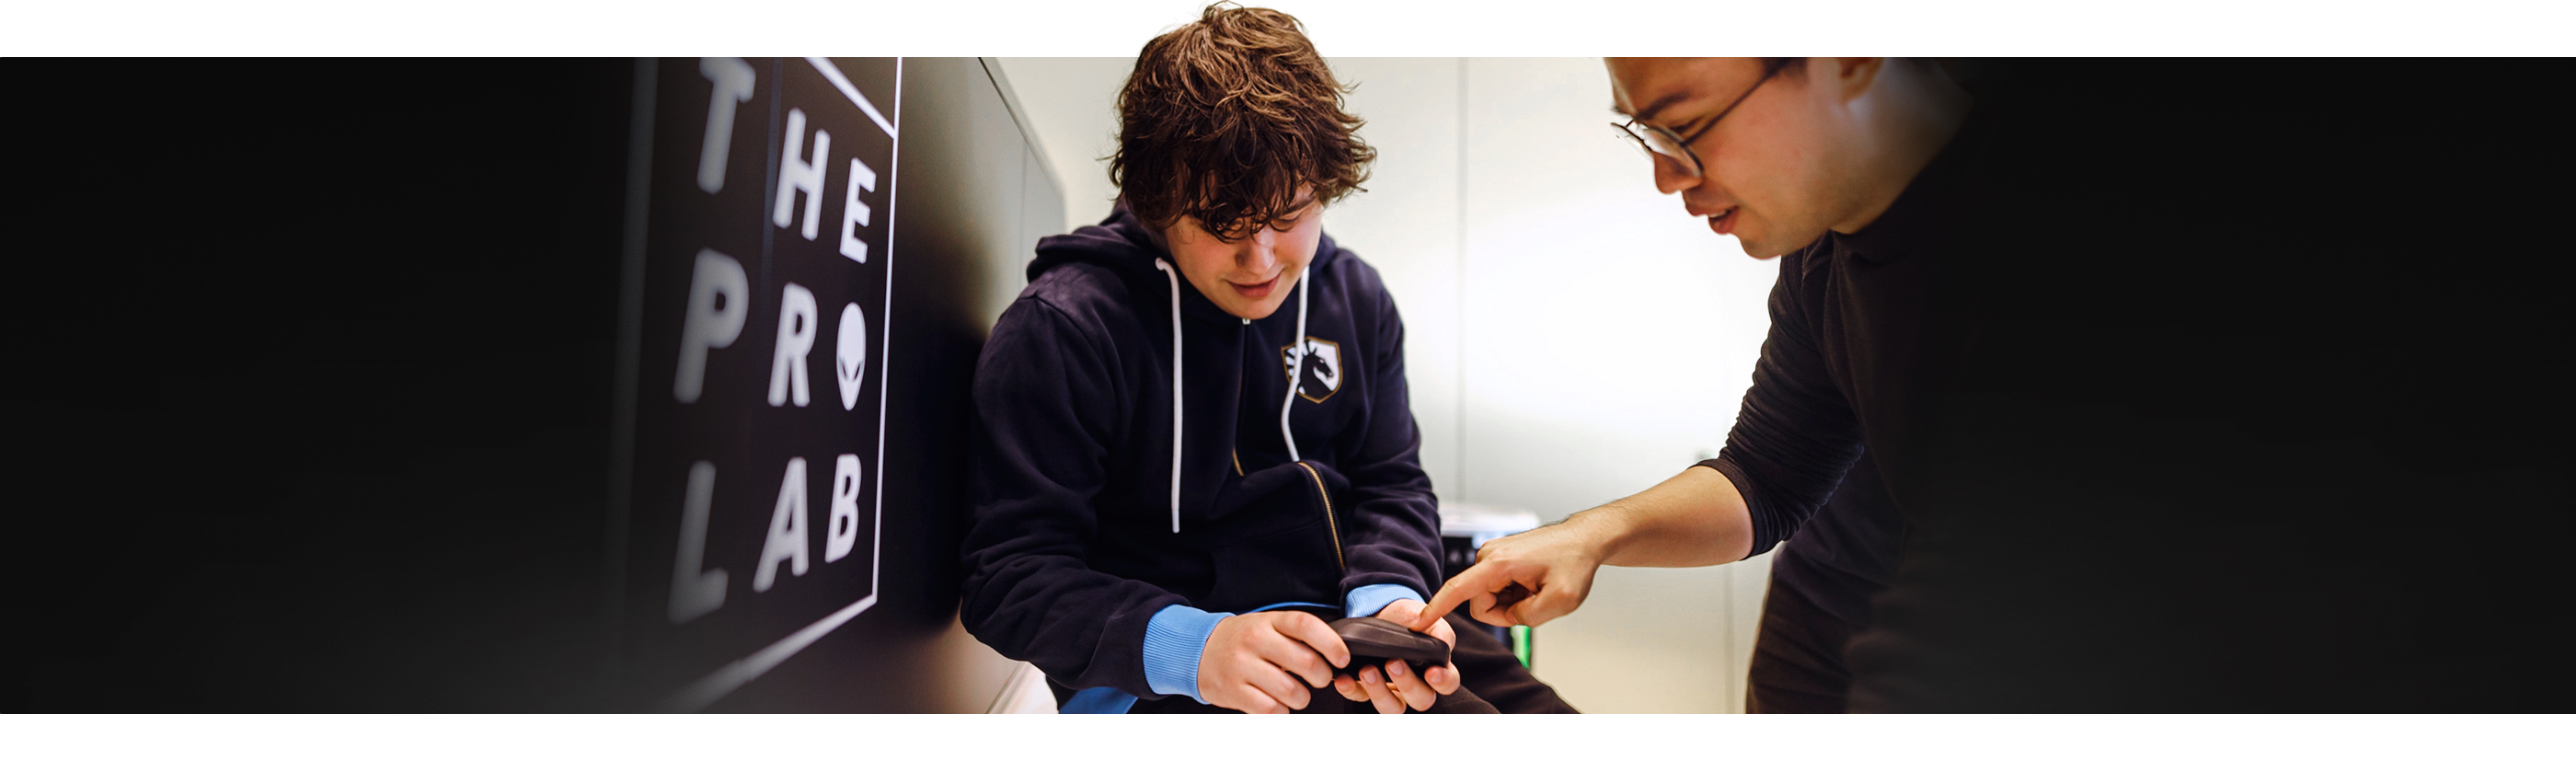 Jeune garçon tenant une souris gaming sans fil Alienware Pro Dell avec un homme à côté qui montre le produit du doigt.